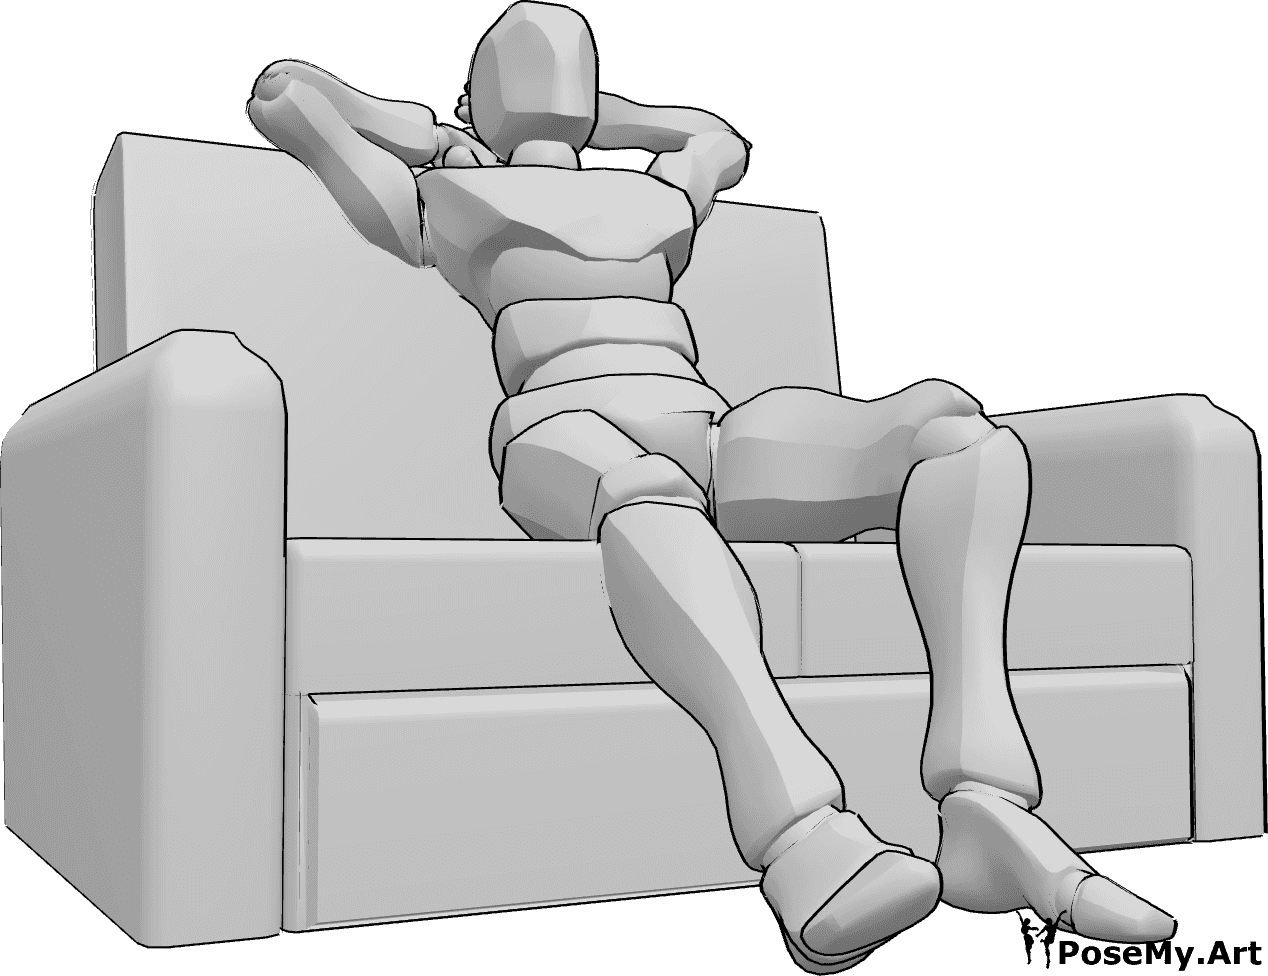 Referencia de poses- Postura sentada en el sofá - El hombre está cómodamente sentado en el sofá, estirando las piernas y los brazos